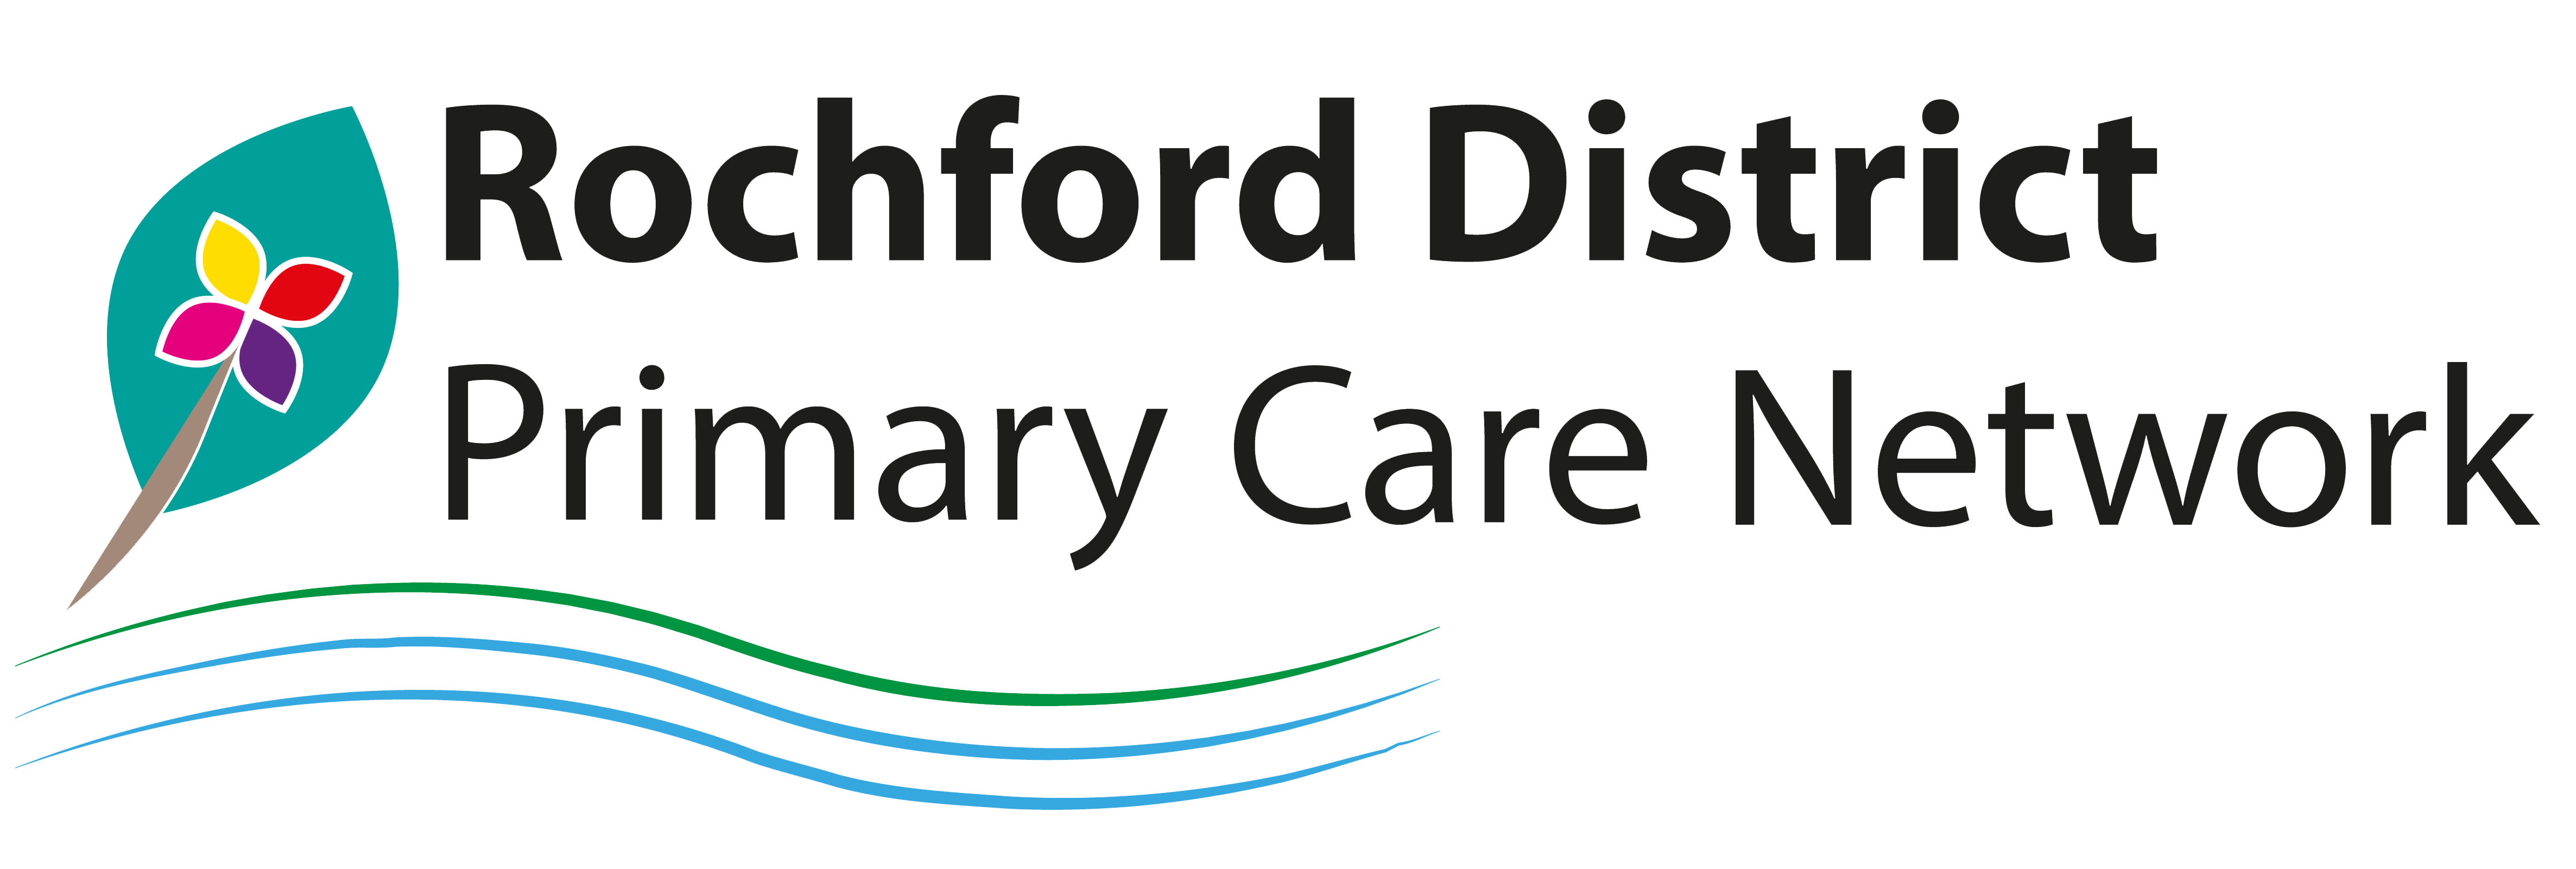 The Rochford Primary Care Network logo